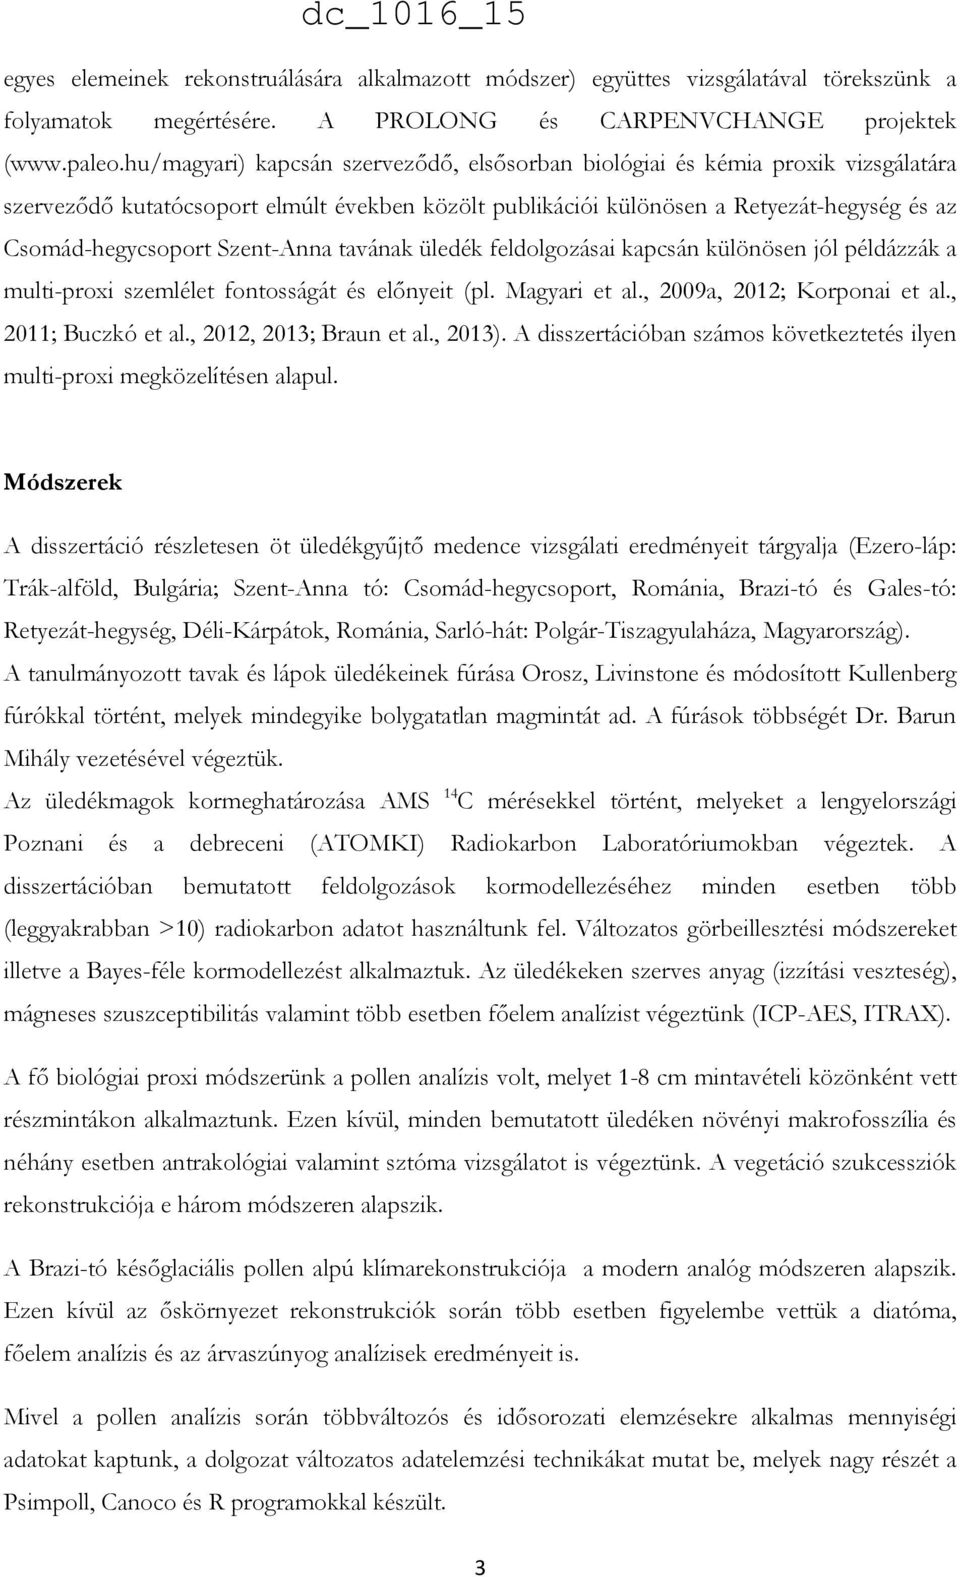 Szent-Anna tavának üledék feldolgozásai kapcsán különösen jól példázzák a multi-proxi szemlélet fontosságát és előnyeit (pl. Magyari et al., 2009a, 2012; Korponai et al., 2011; Buczkó et al.